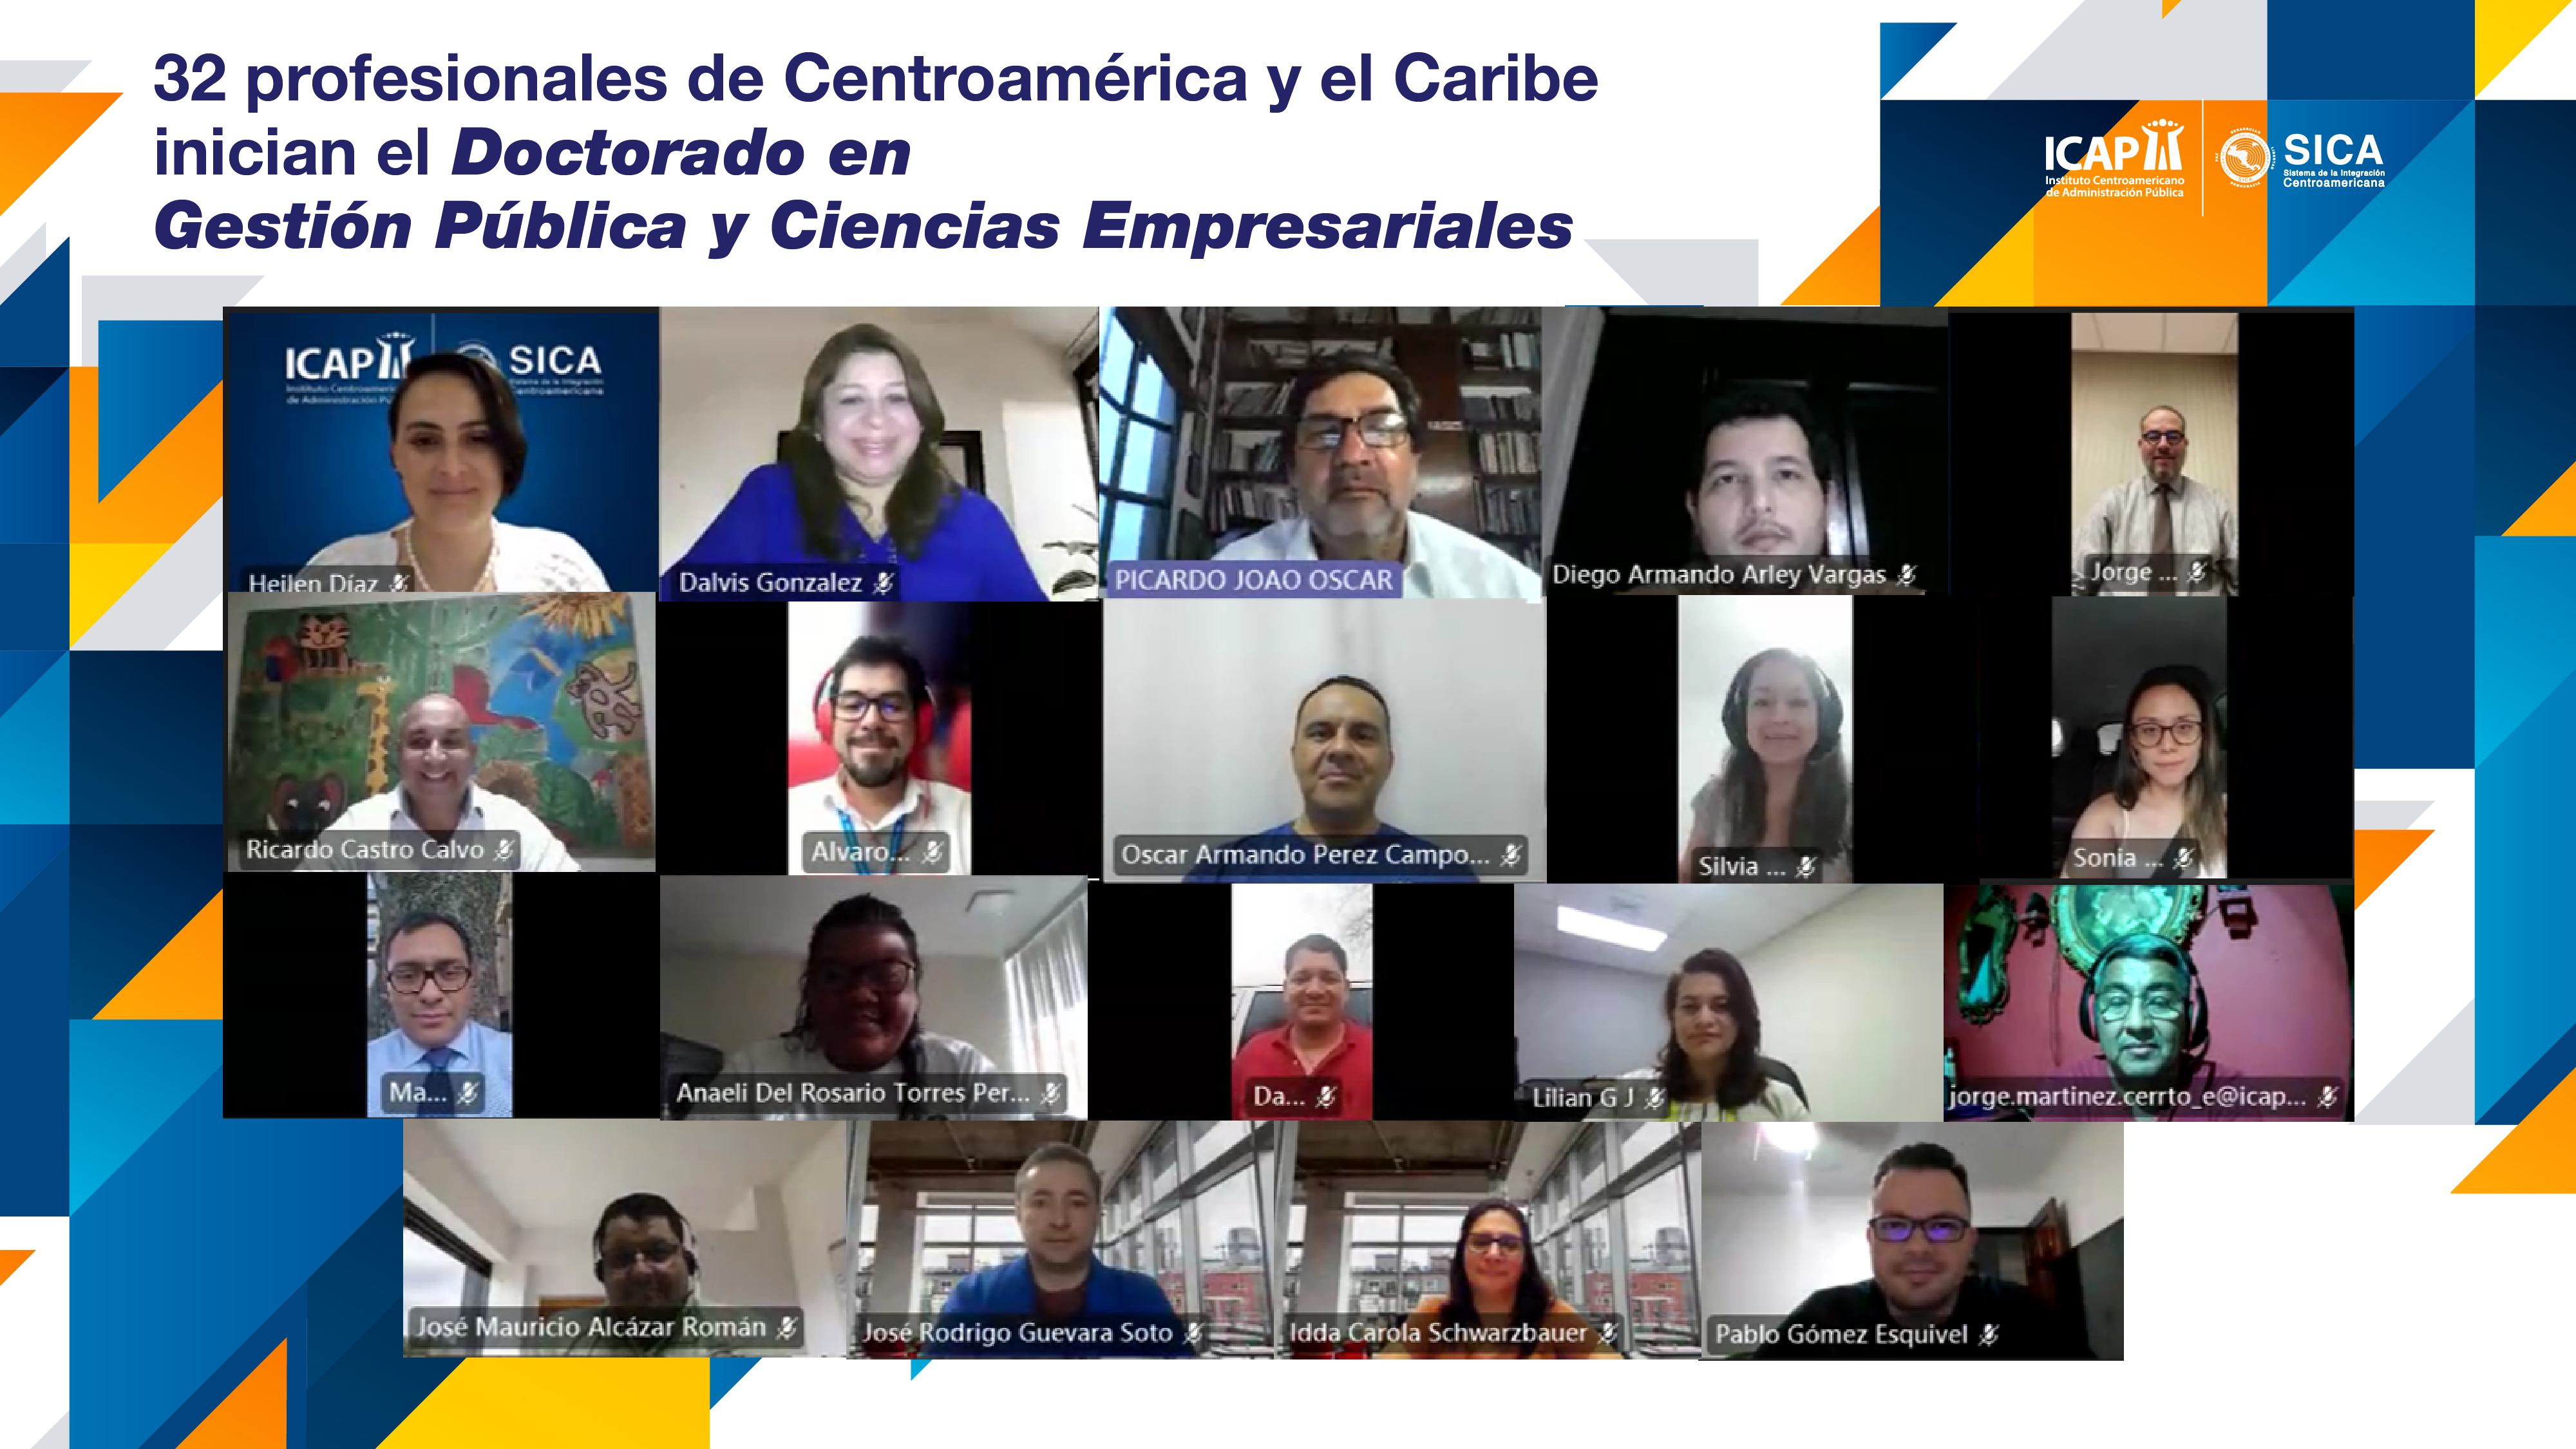 32 profesionales de Centroamérica y el Caribe inician el Doctorado en Gestión Pública y Ciencias Empresariales